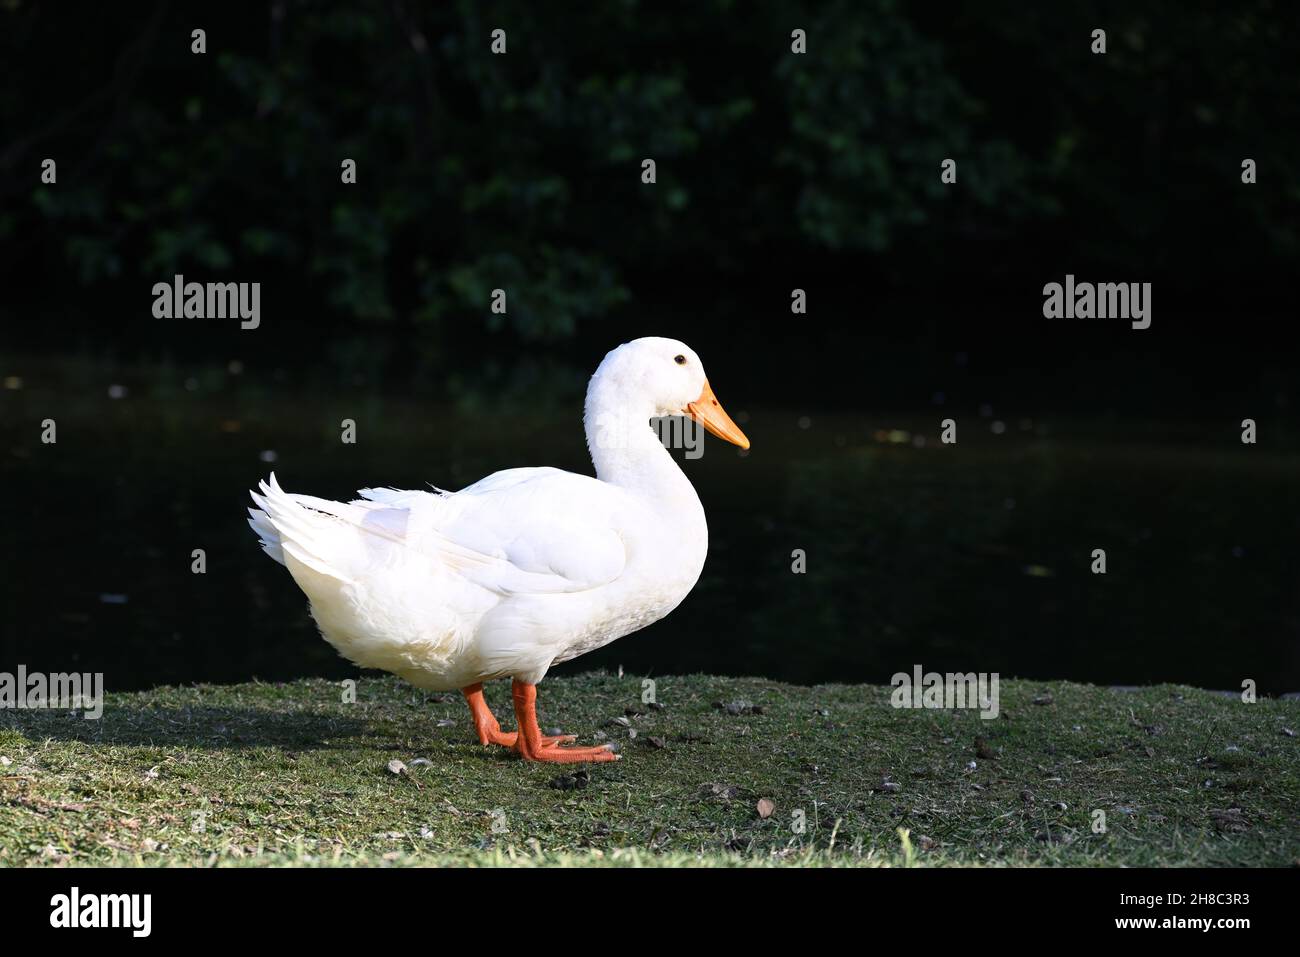 Seitenaufnahme einer leuchtend weißen Ente mit orangefarbenem Schnabel und Beinen, die in einem grasbewachsenen Bereich neben einem See stehen Stockfoto